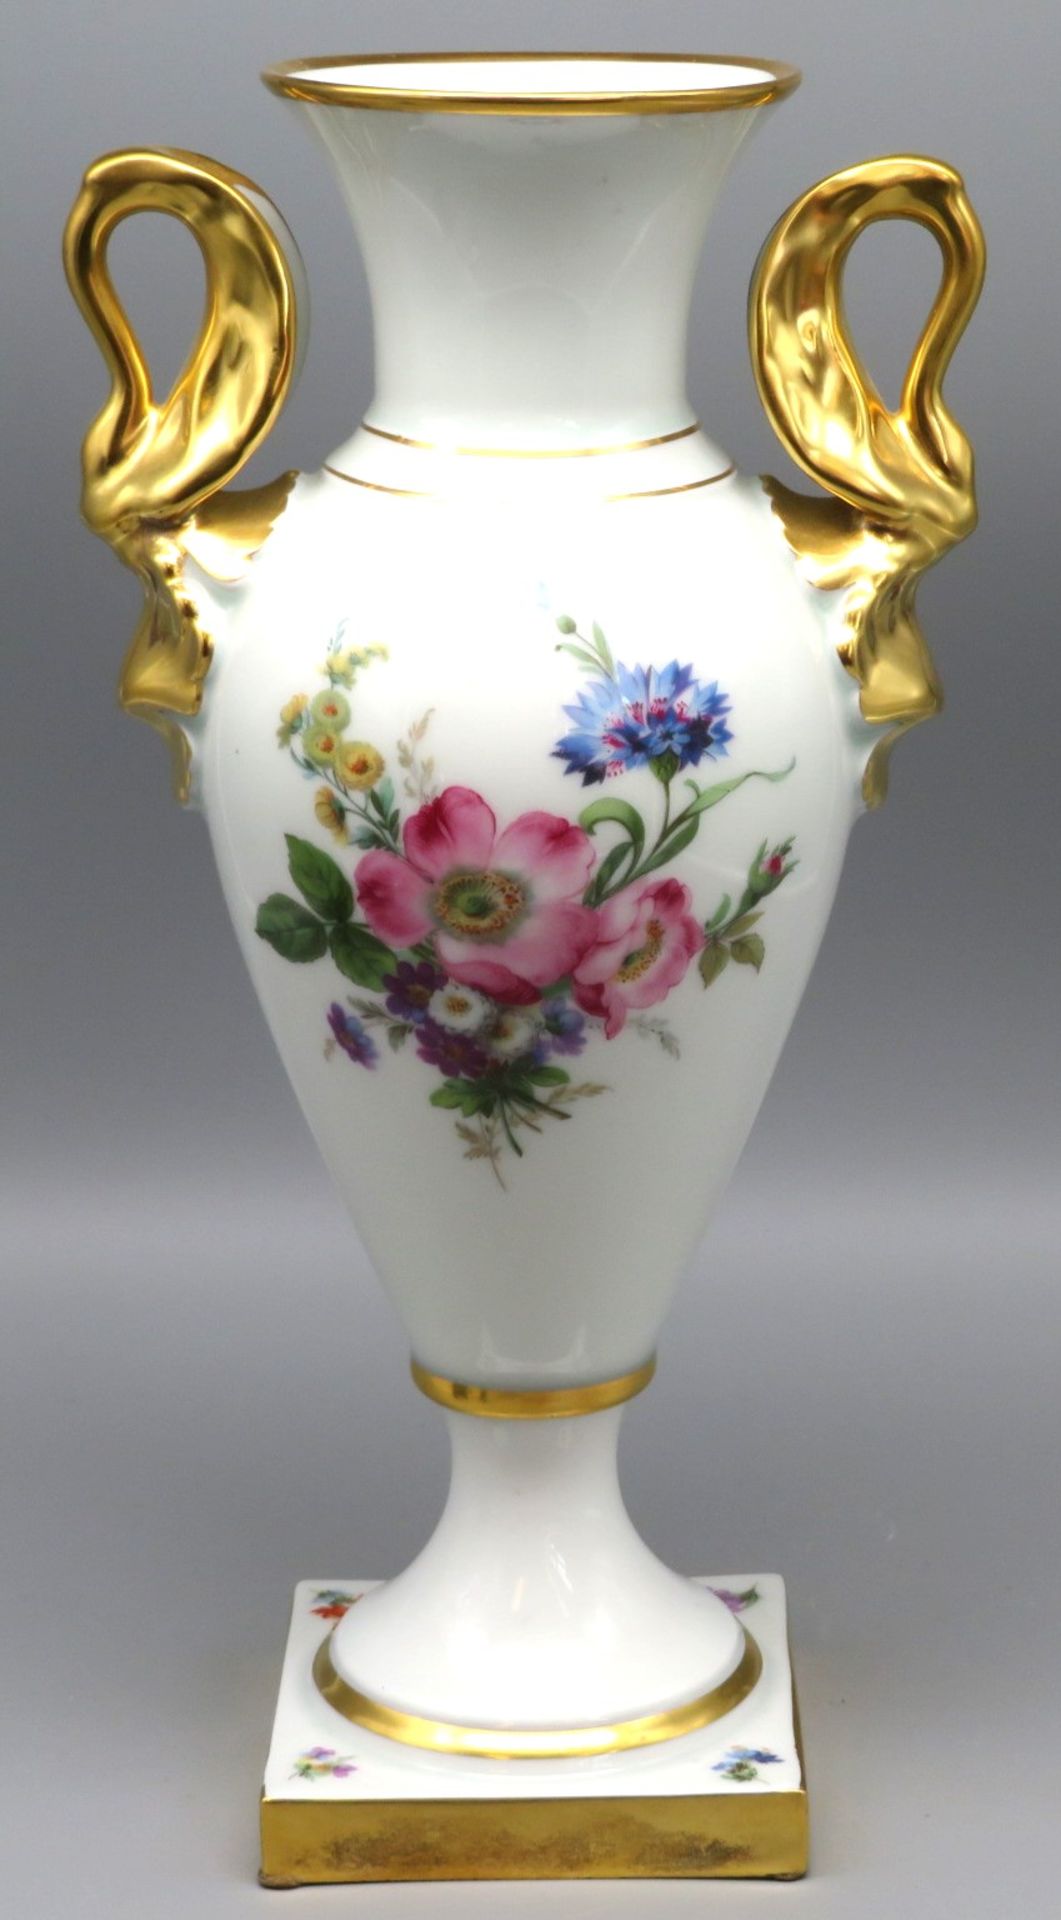 Henkelamphore, Lindner Porzellan, Weißporzellan mit polychromer Blütenbemalung, reiche Goldmalerei,